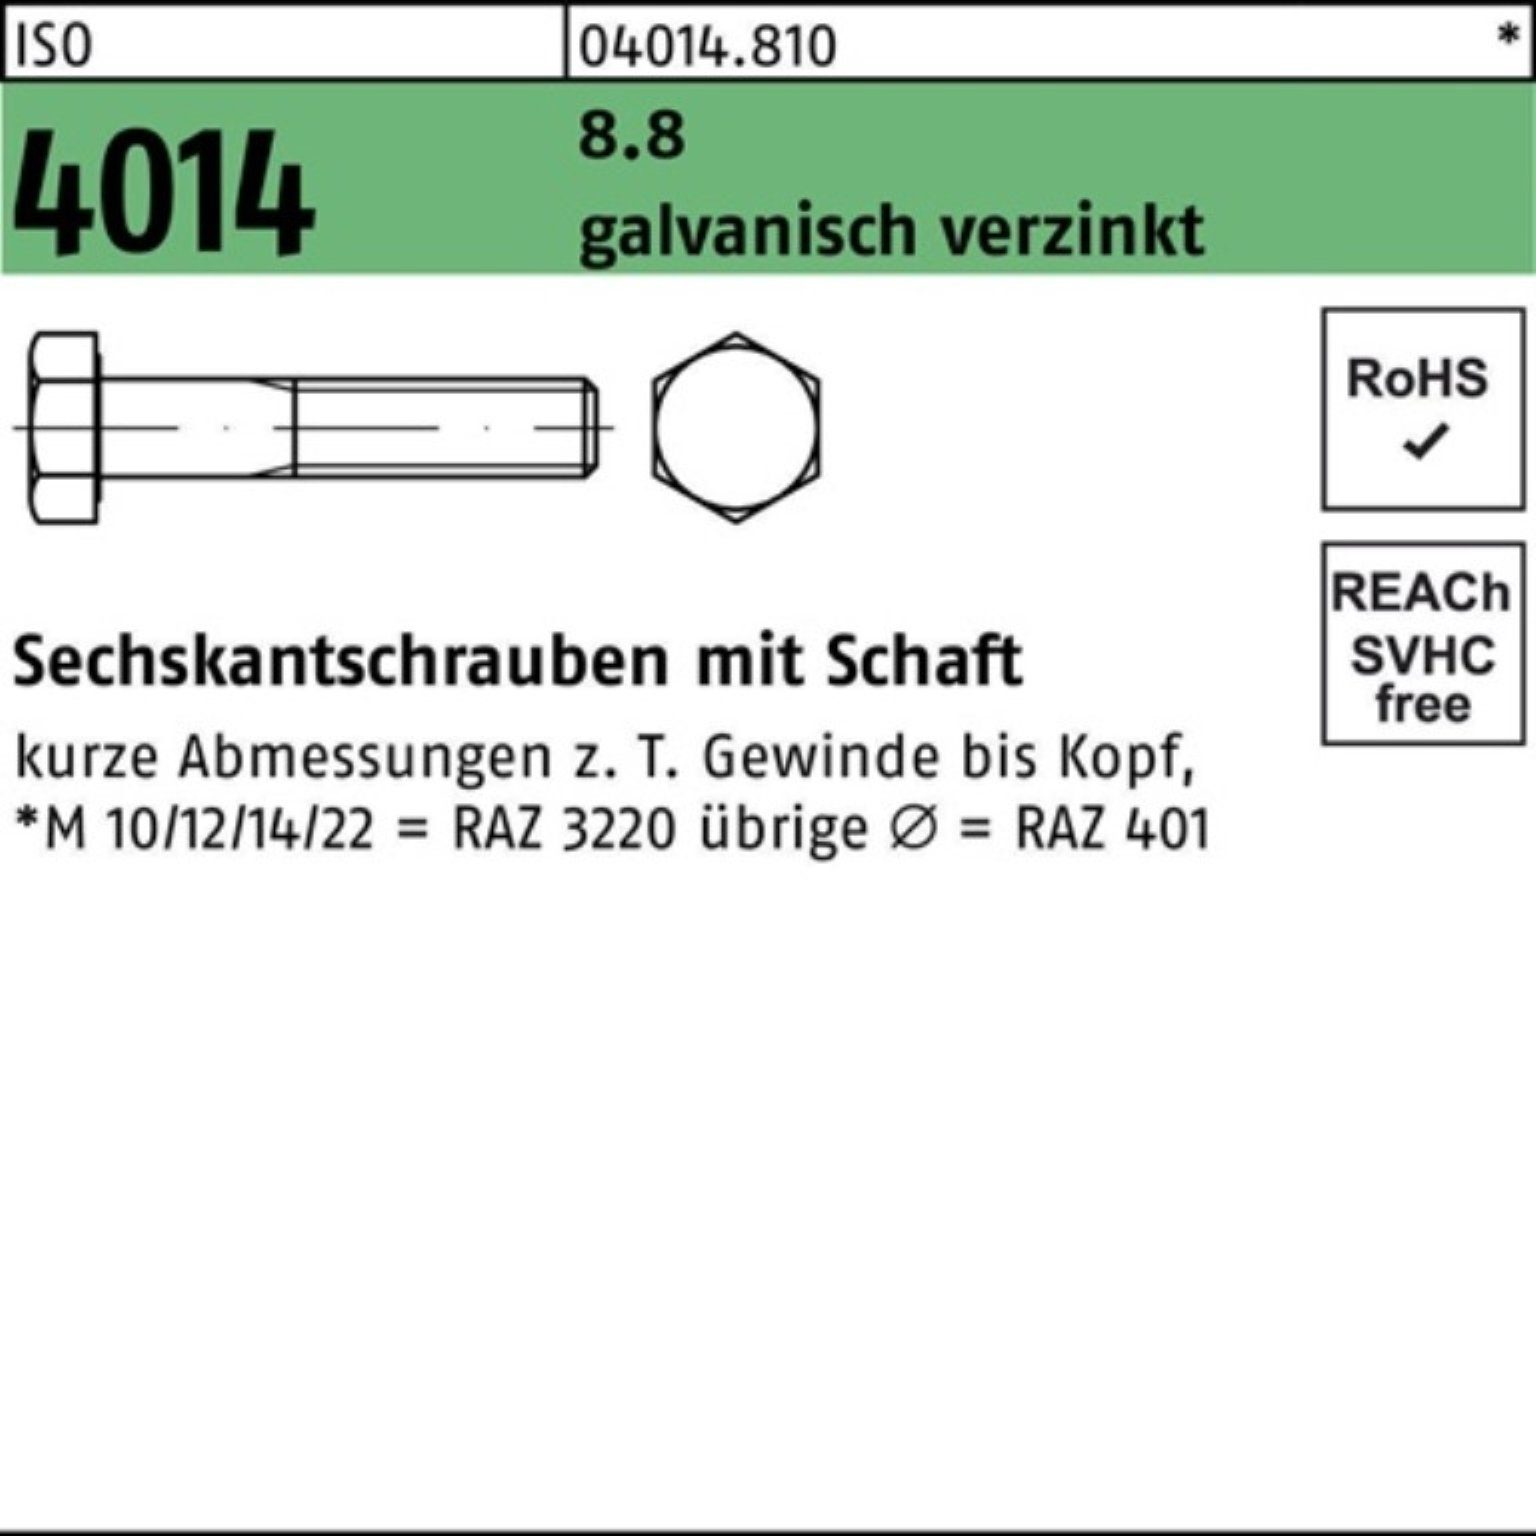 ISO Sechskantschraube 75 4014 Schaft 200 Pack Sechskantschraube Bufab galv.verz. 8.8 200er M6x